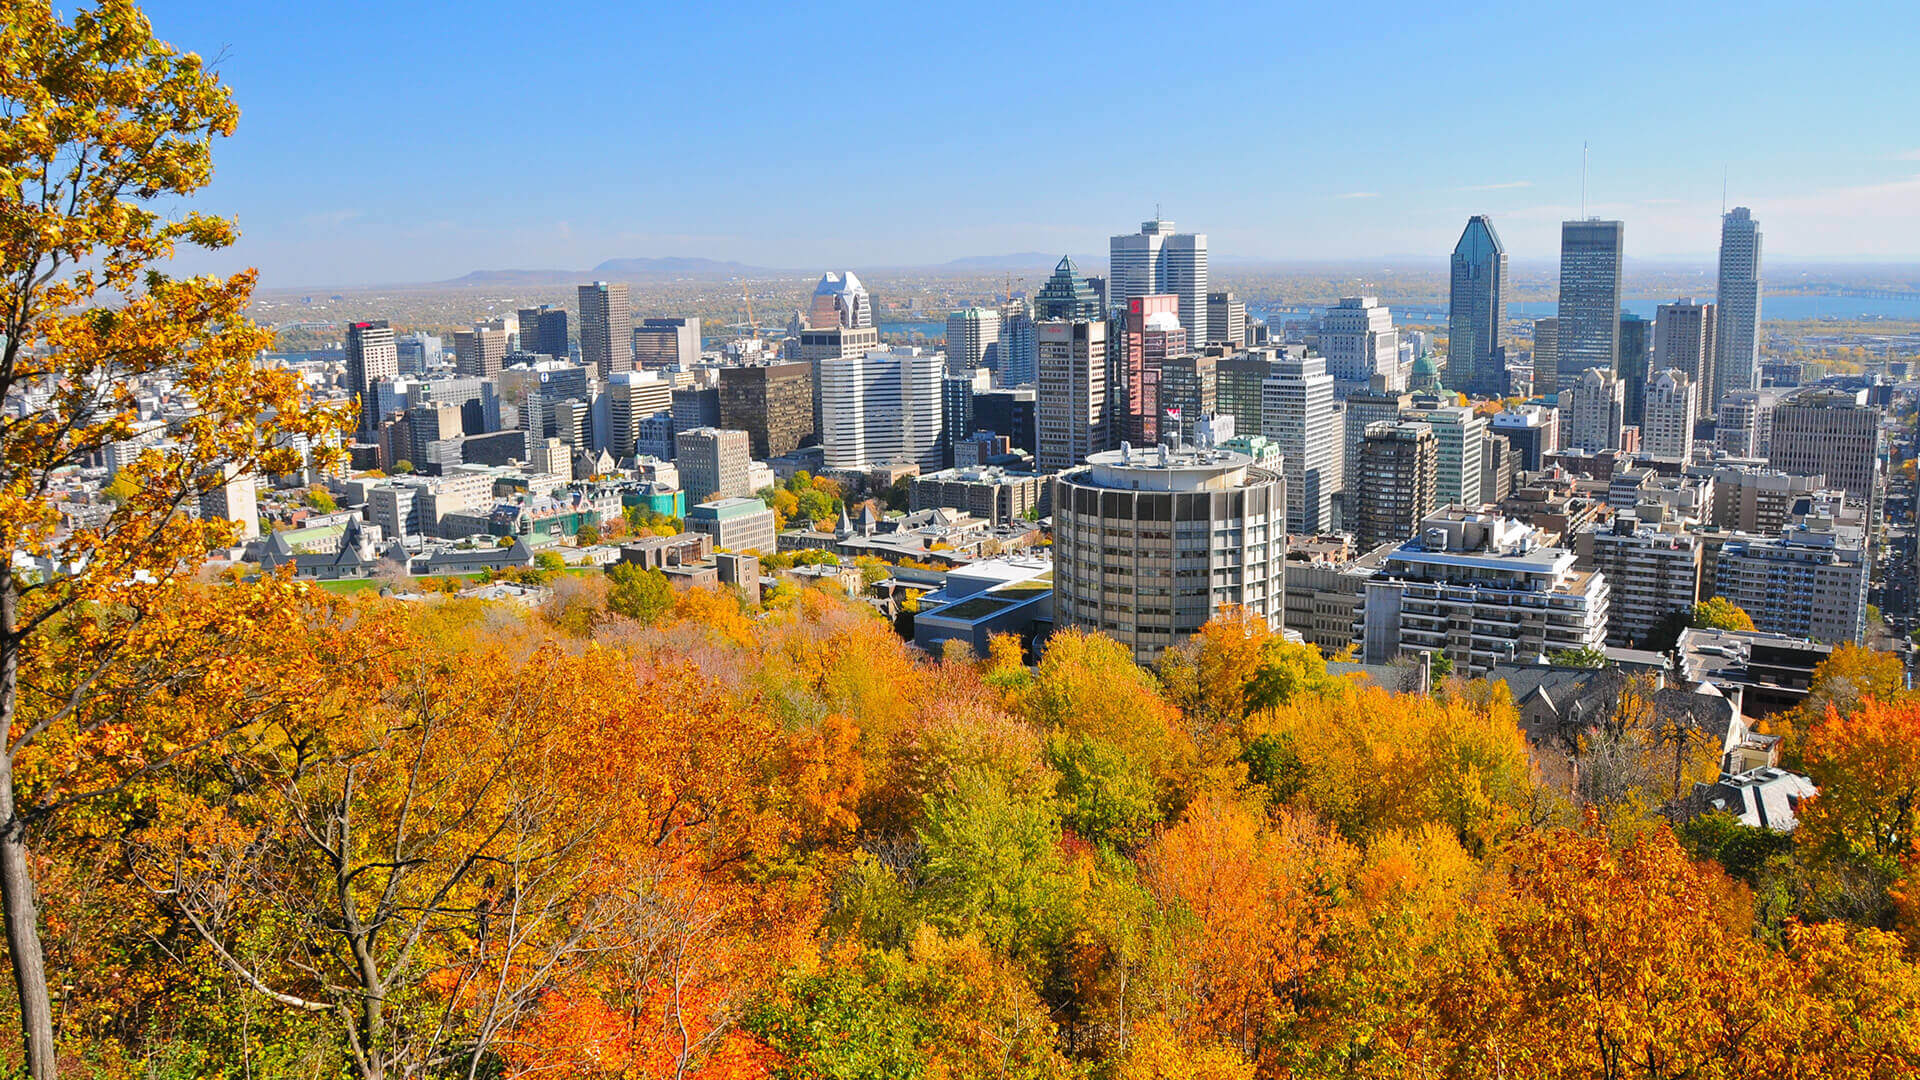 Vue panoramique de Montréal, Québec, avec des gratte-ciels entourés de feuillage automnal vibrant.